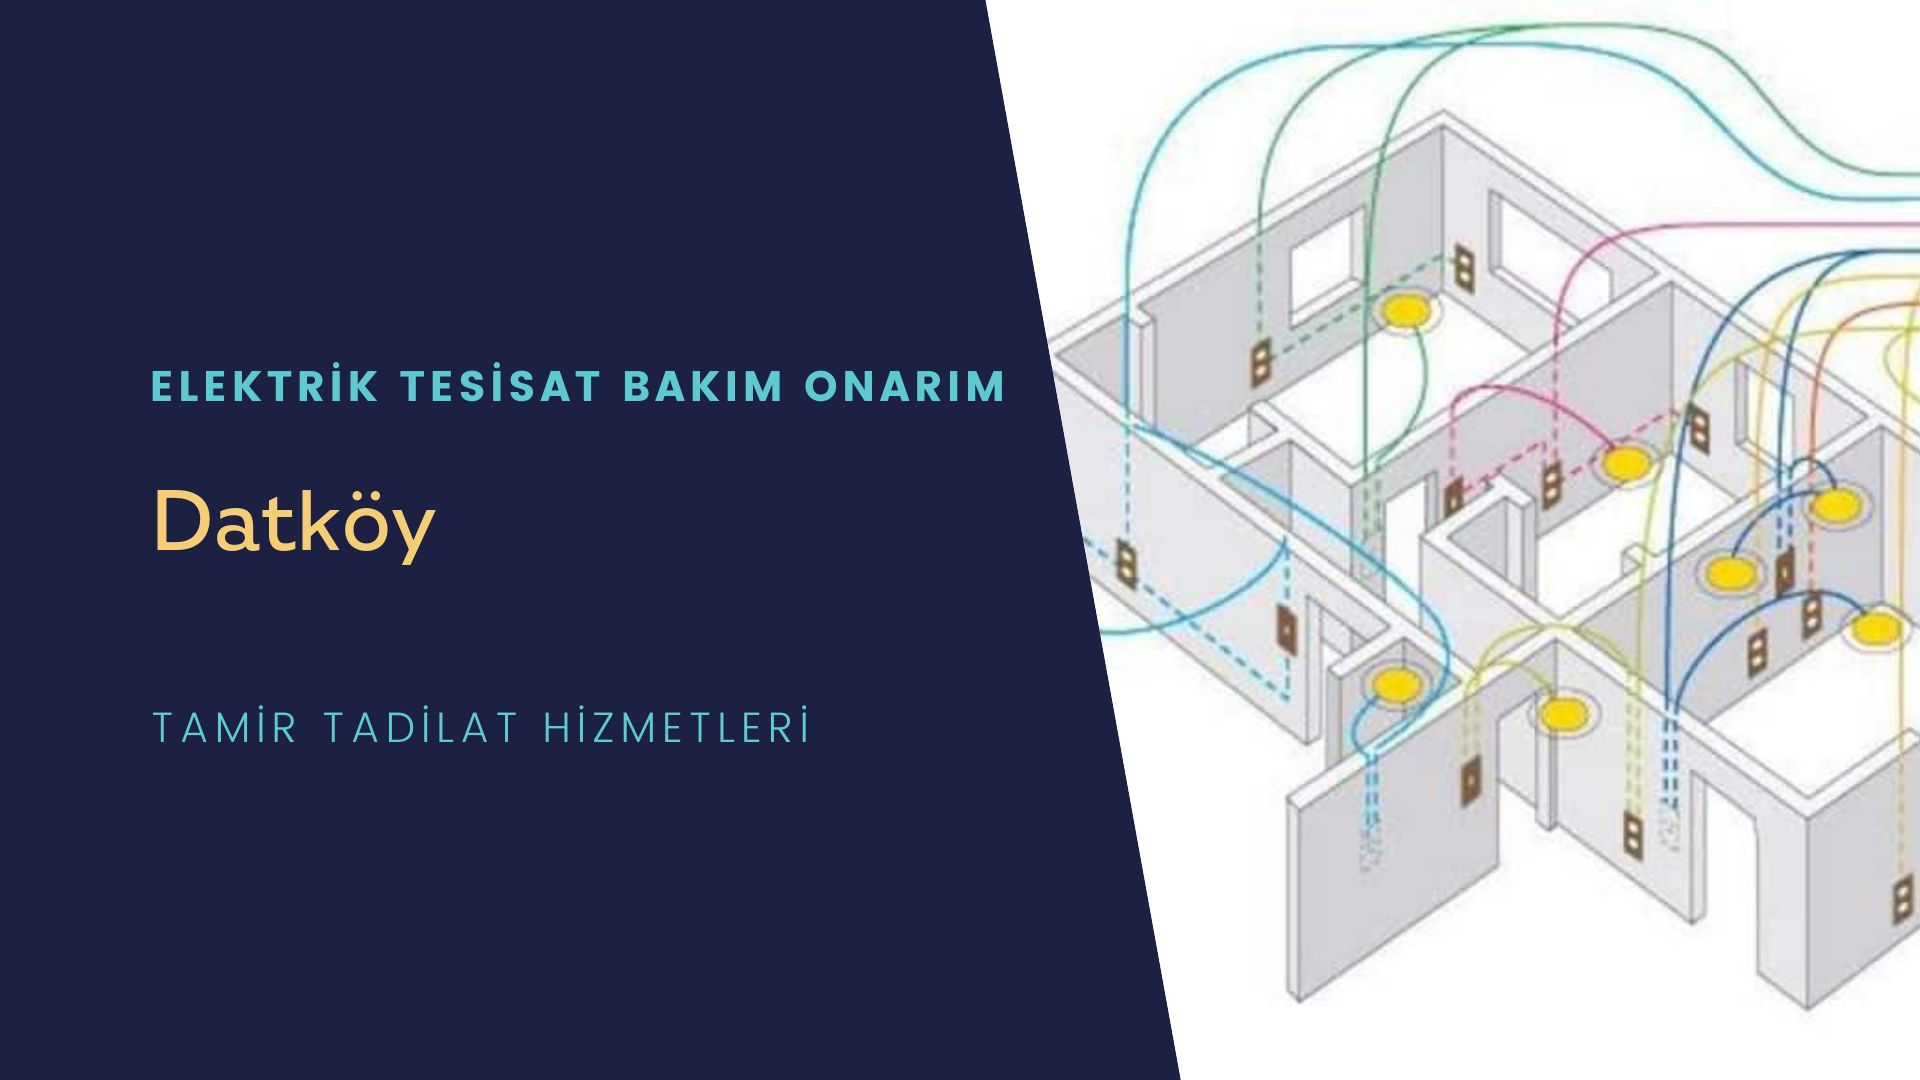 Datköy'de elektrik tesisatı ustalarımı arıyorsunuz doğru adrestenizi Datköy elektrik tesisatı ustalarımız 7/24 sizlere hizmet vermekten mutluluk duyar.